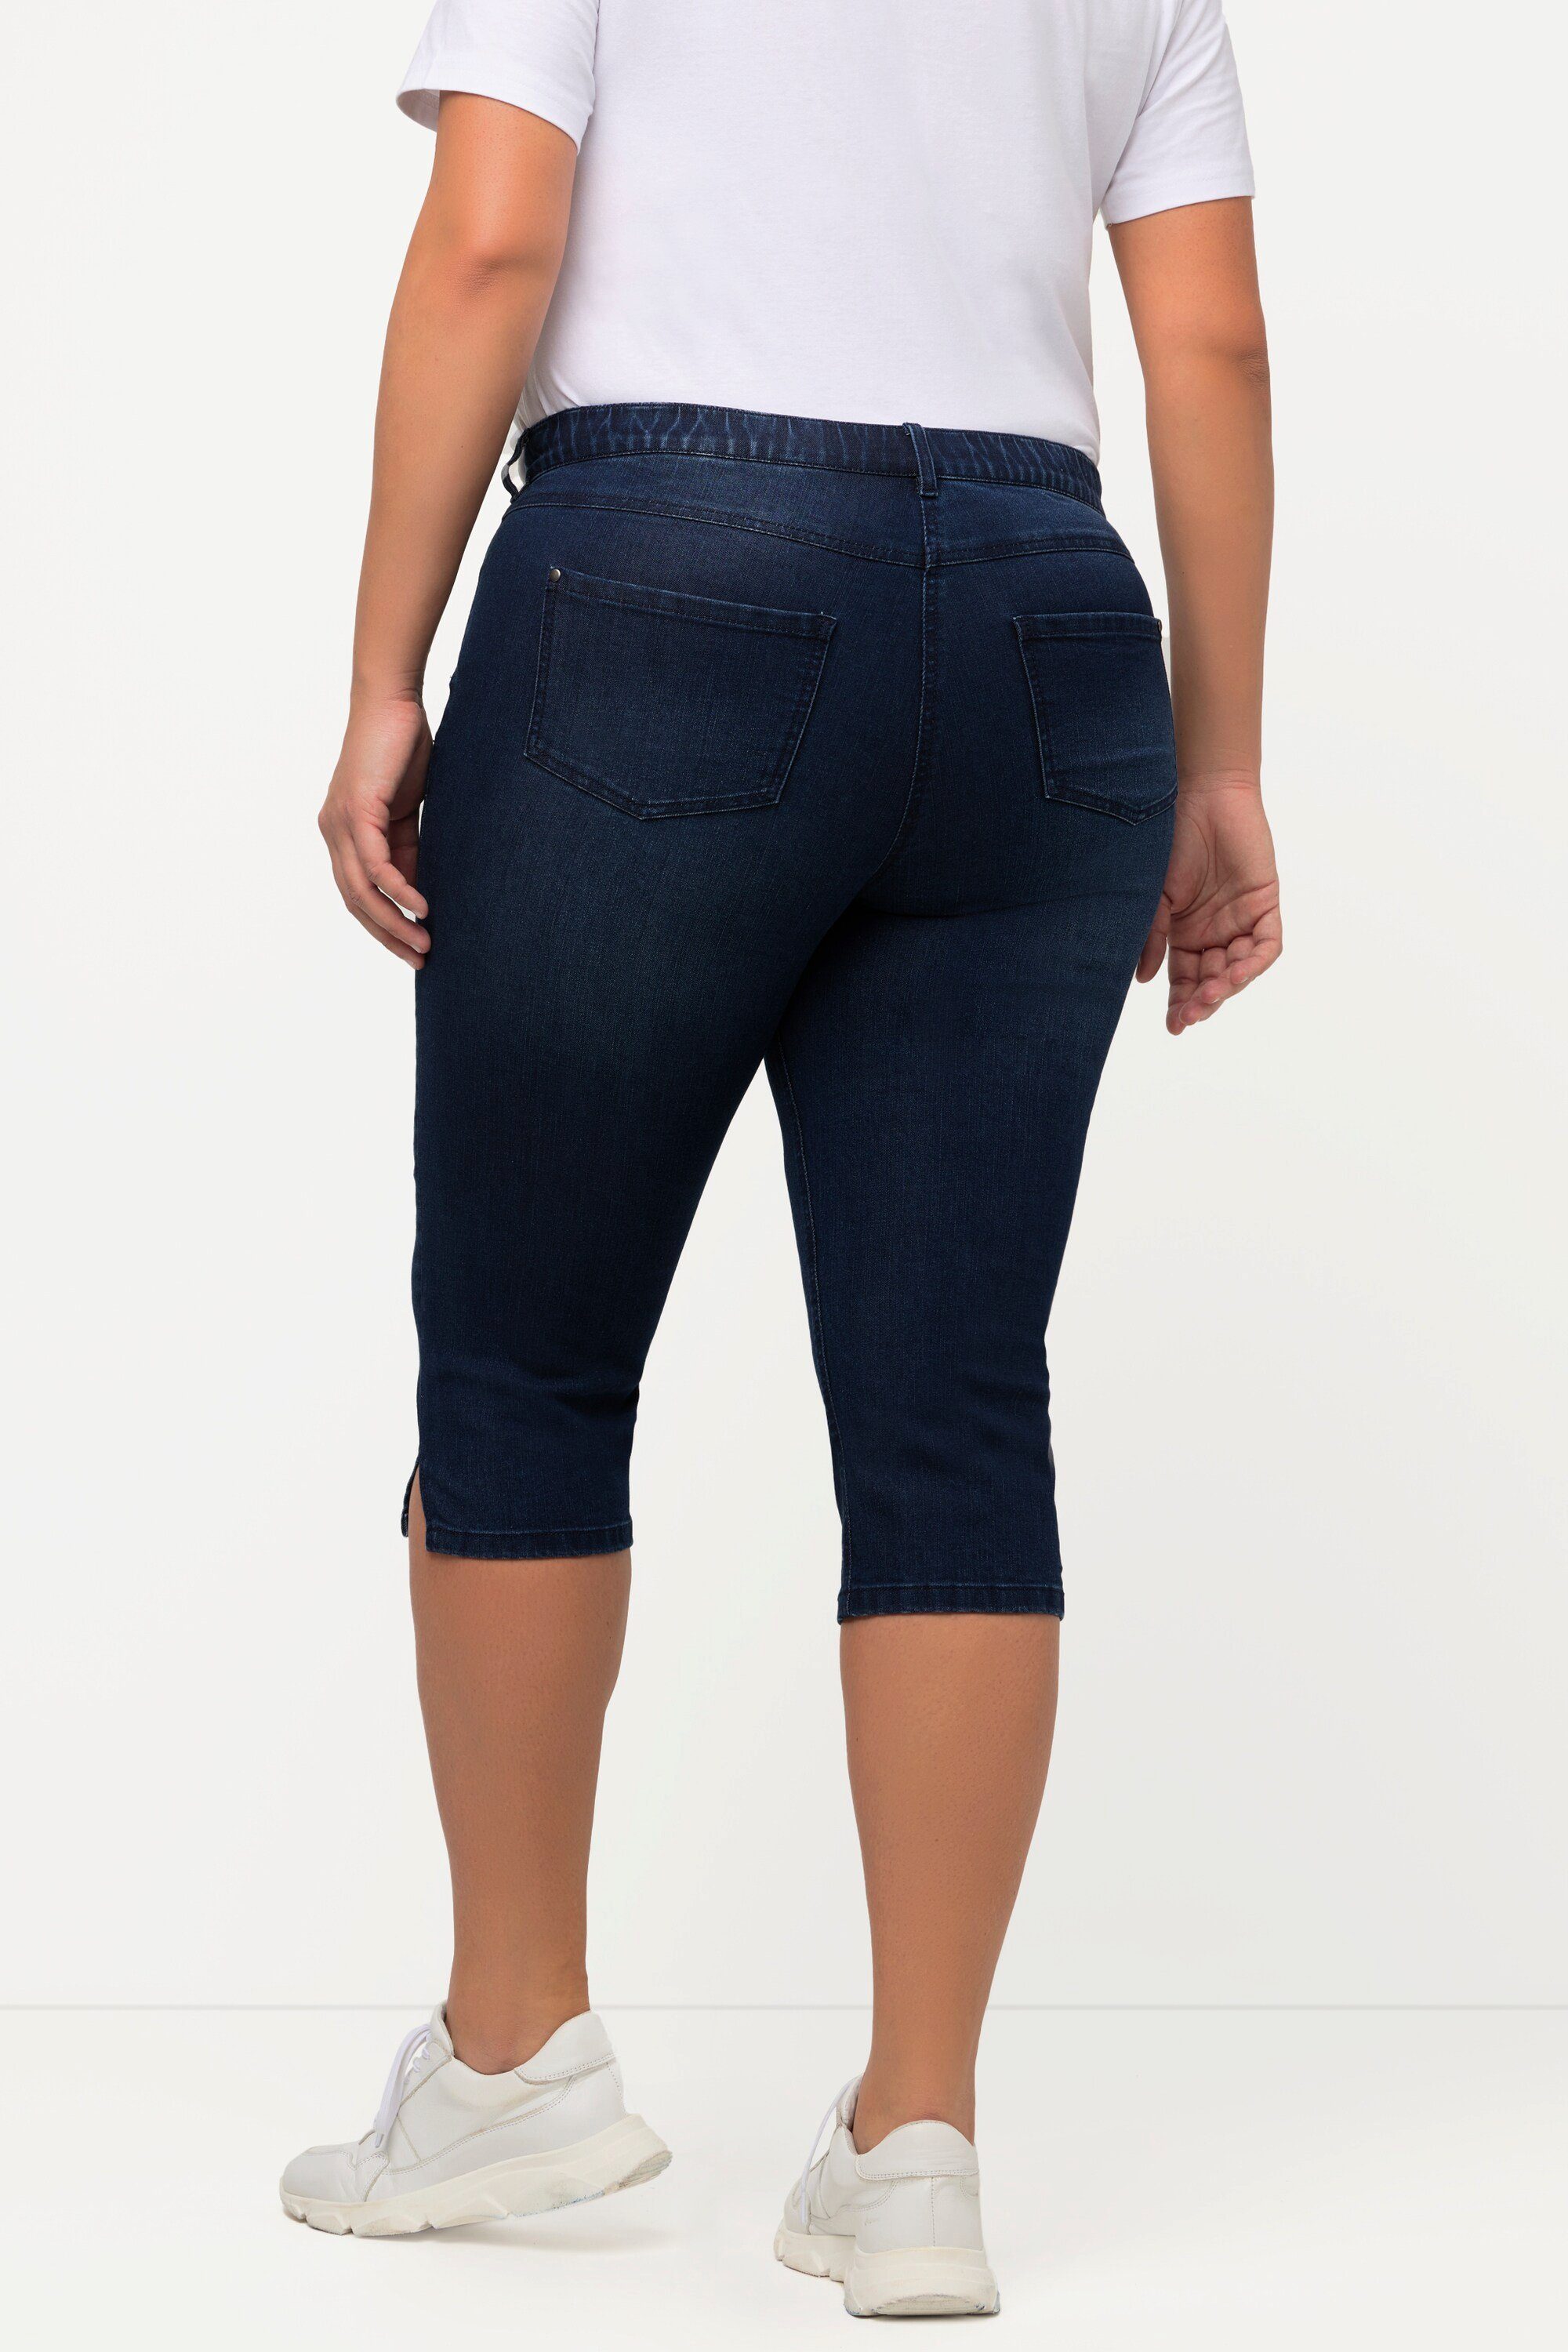 Ulla Popken Funktionshose denim schmale Sarah Capri Jeans blue 5-Pocket-Form